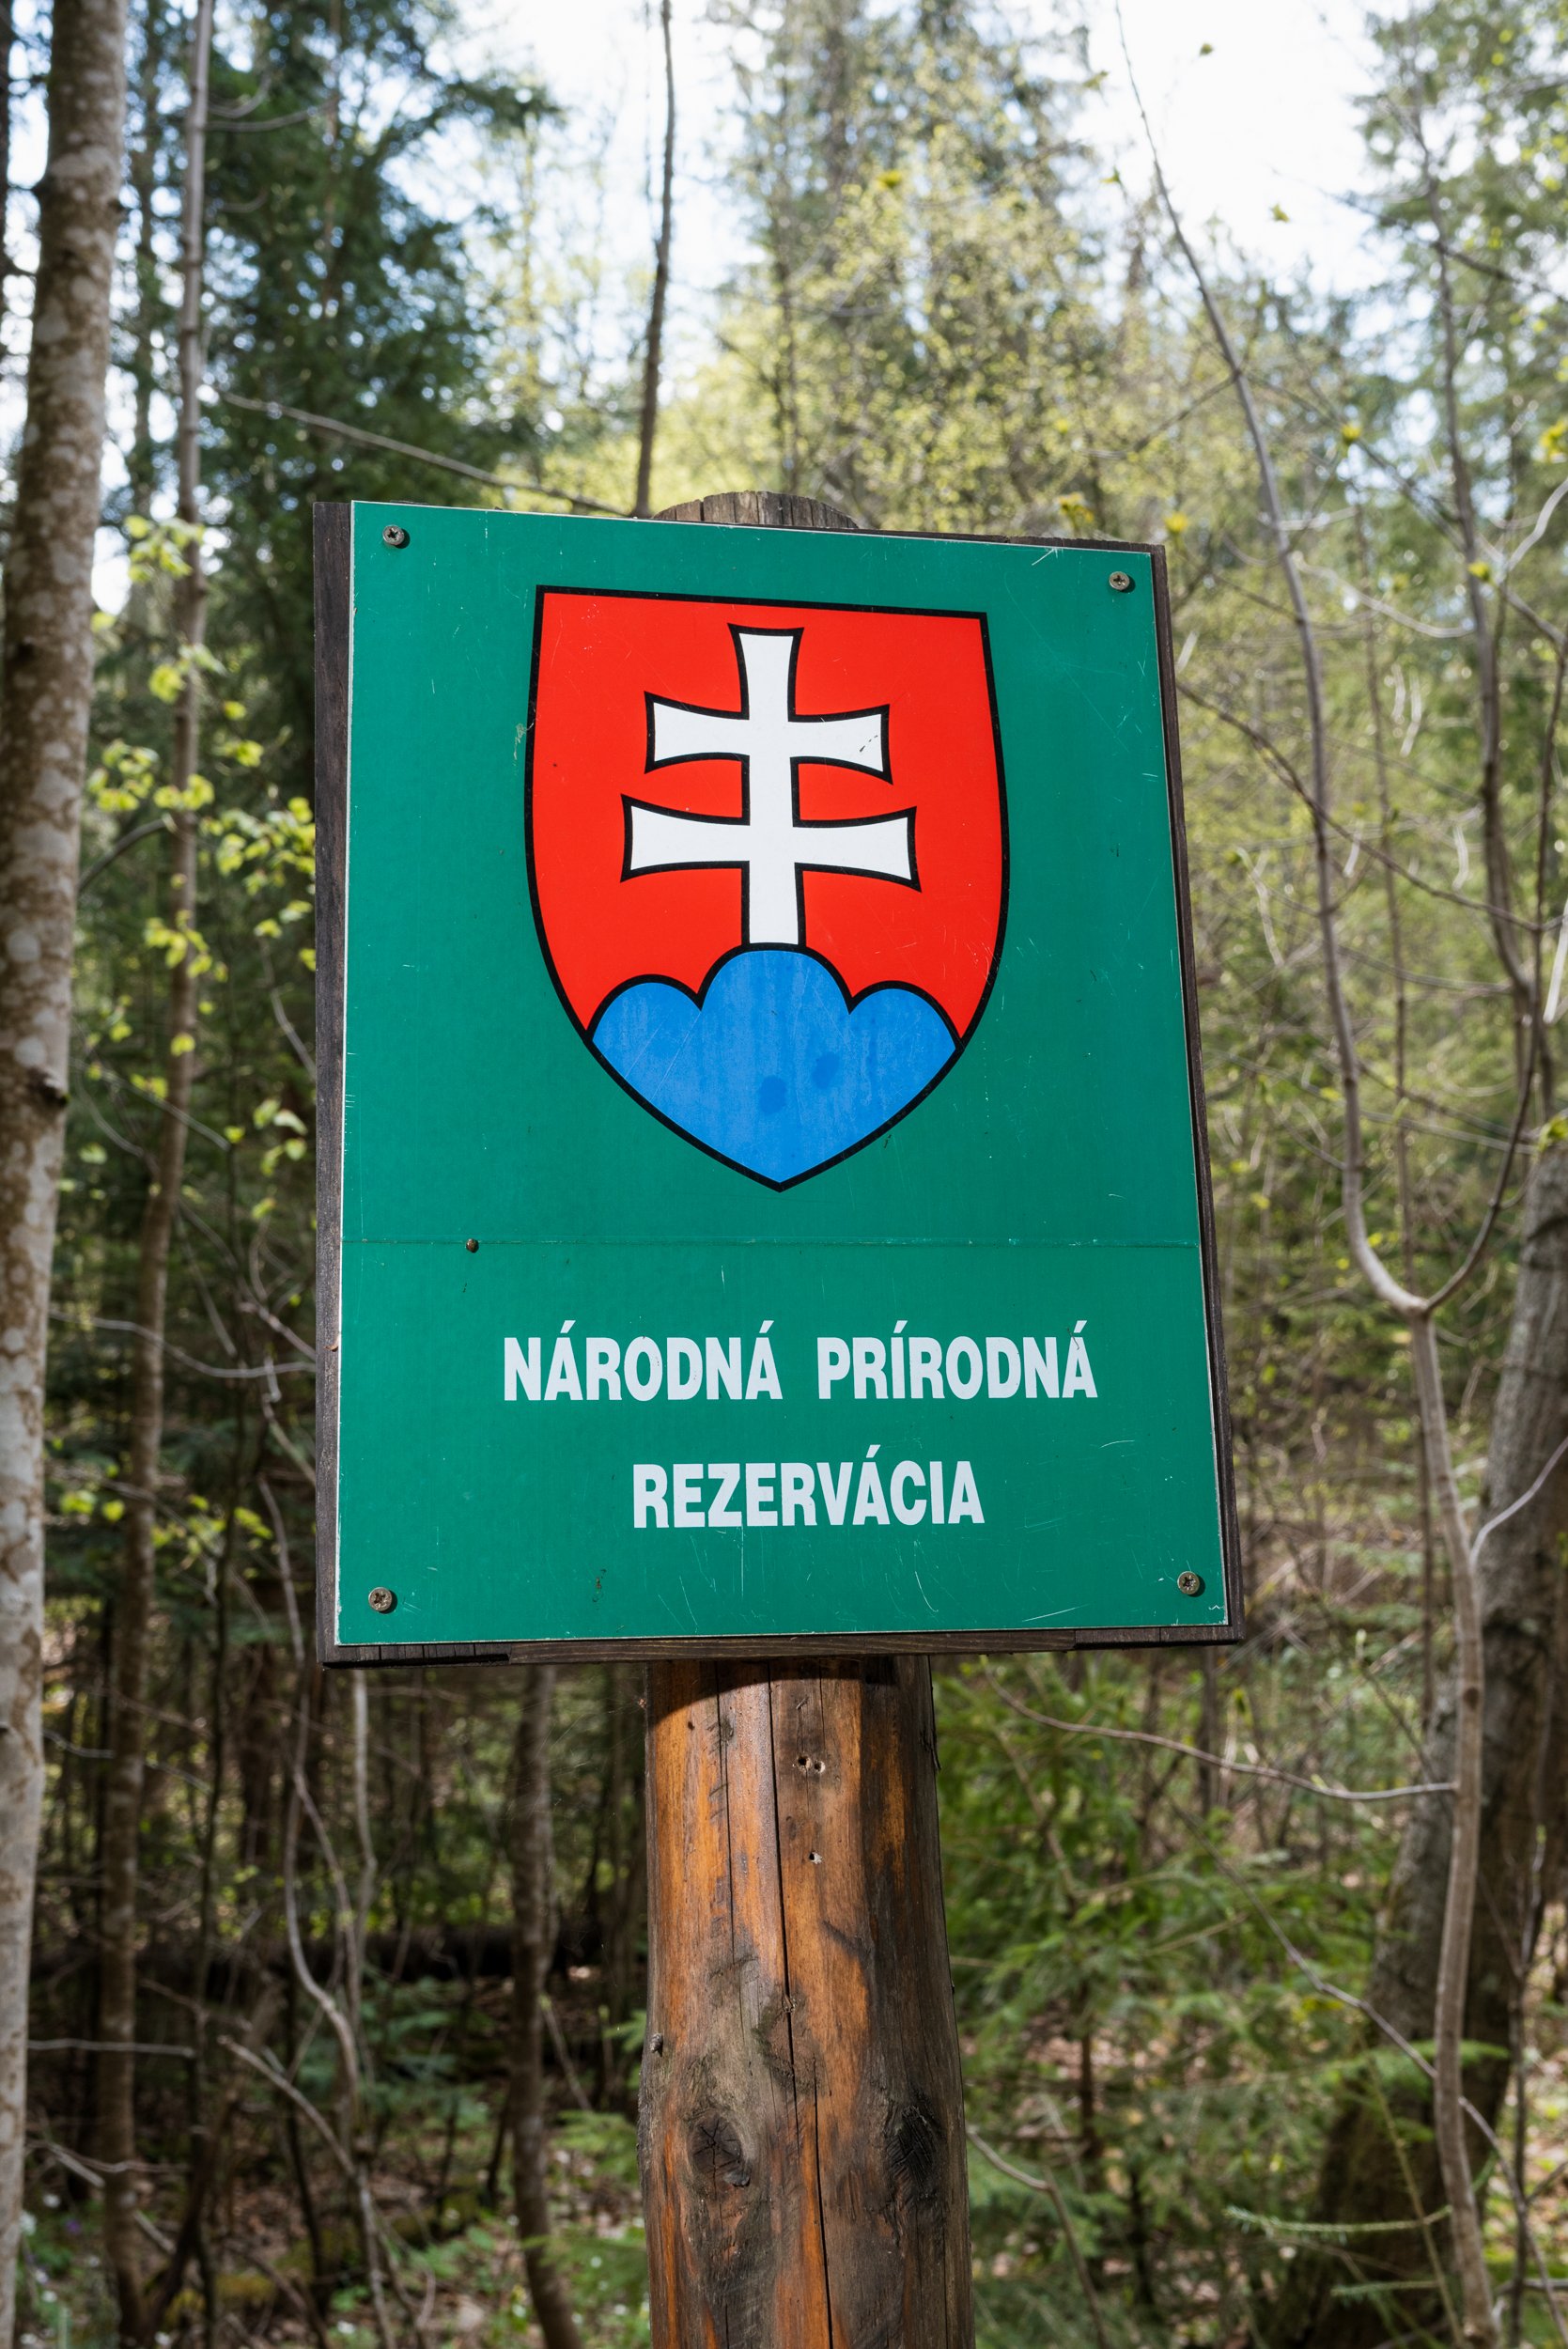 Slovak park signage